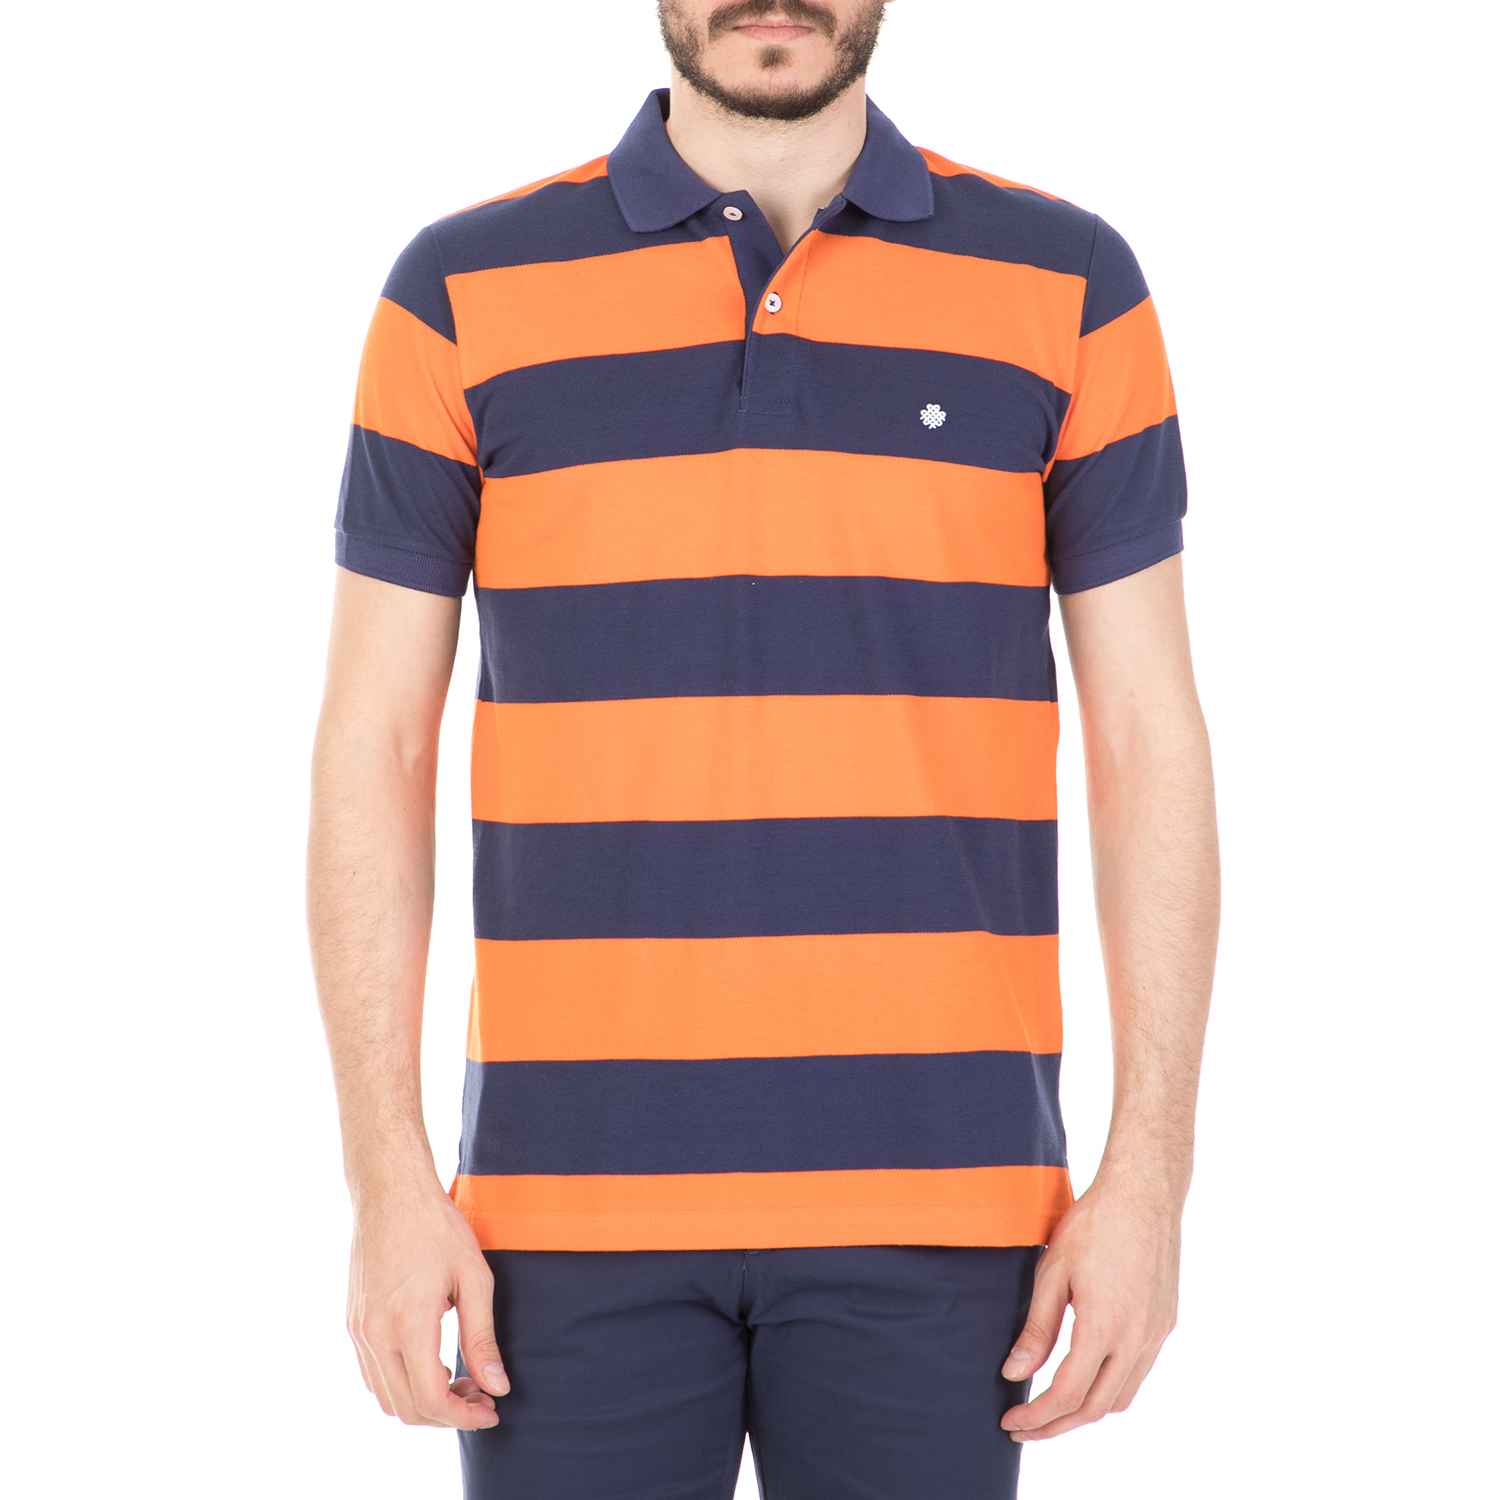 Ανδρικά/Ρούχα/Μπλούζες/Πόλο DORS - Ανδρική μπλούζα DORS πορτοκαλί-μπλε